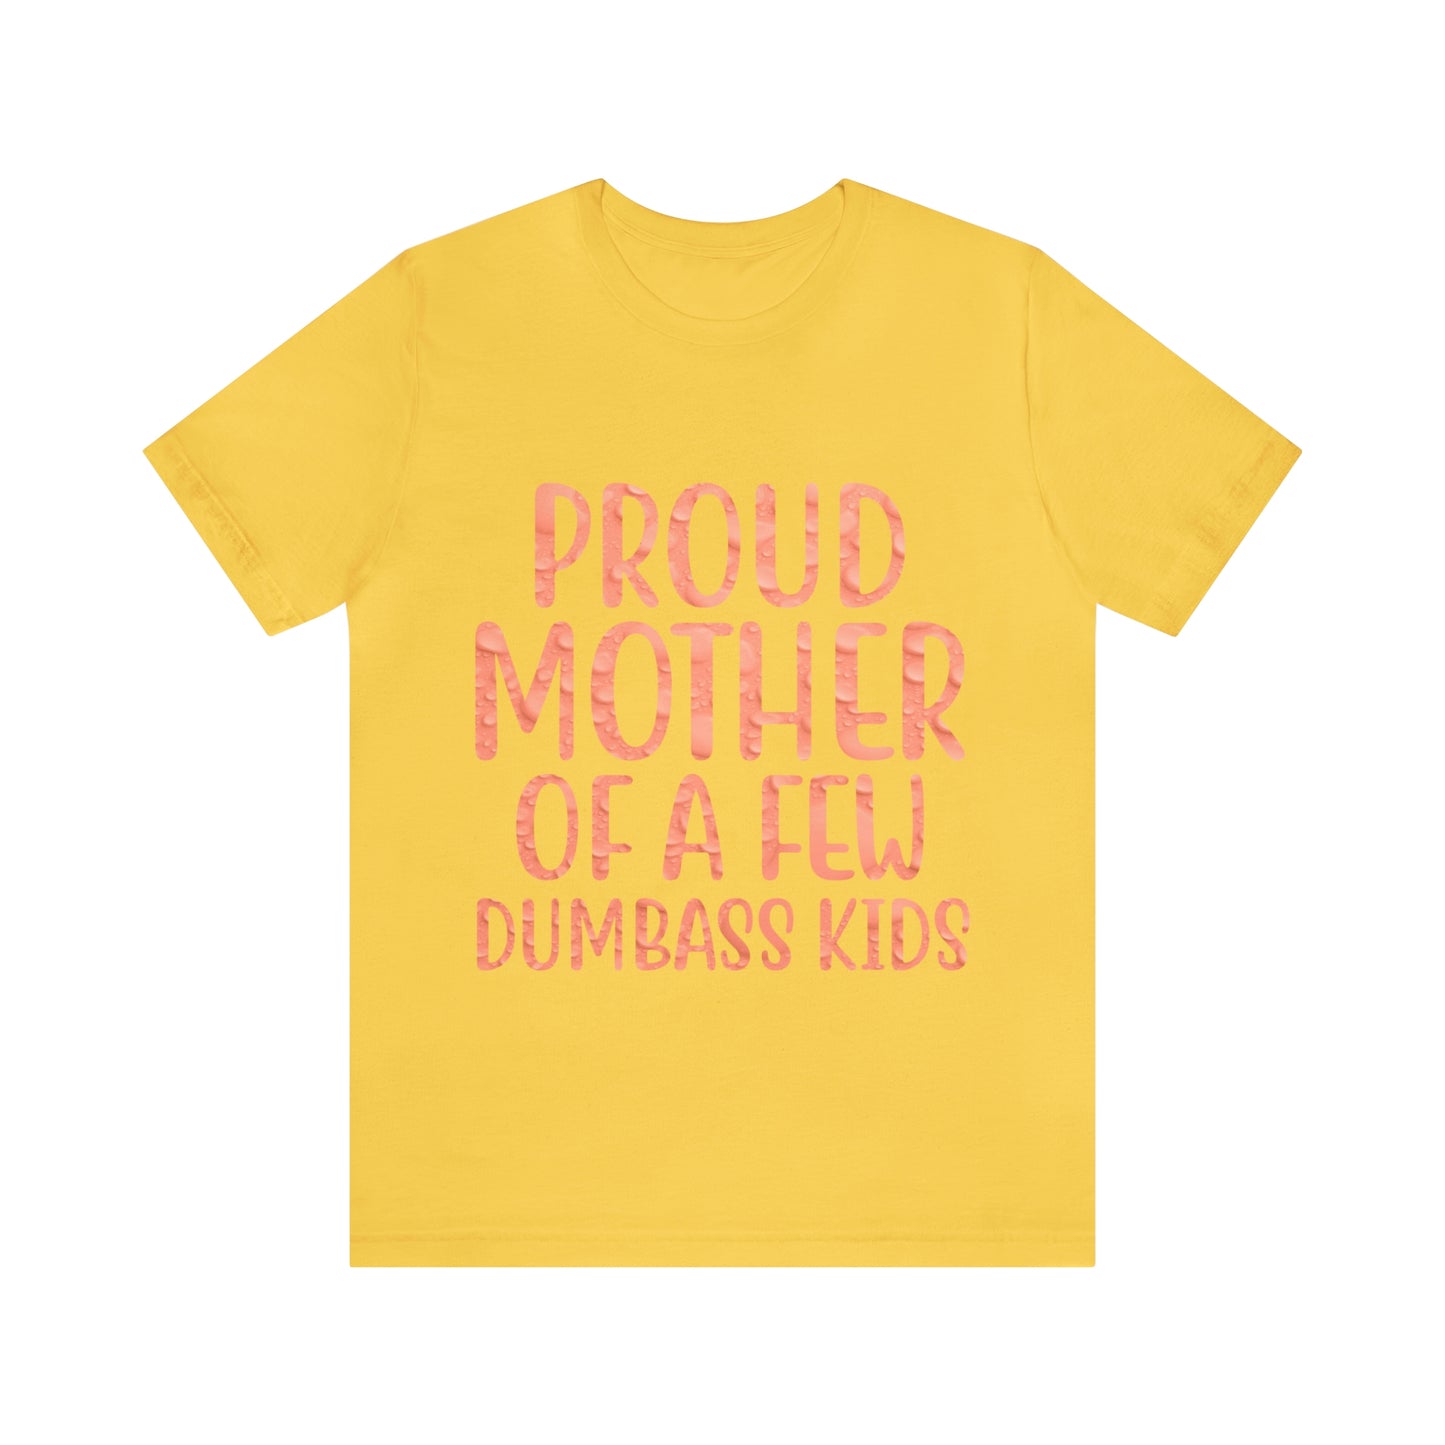 Proud Mother Of A Few Dumbass Kids - Unisex T-Shirt